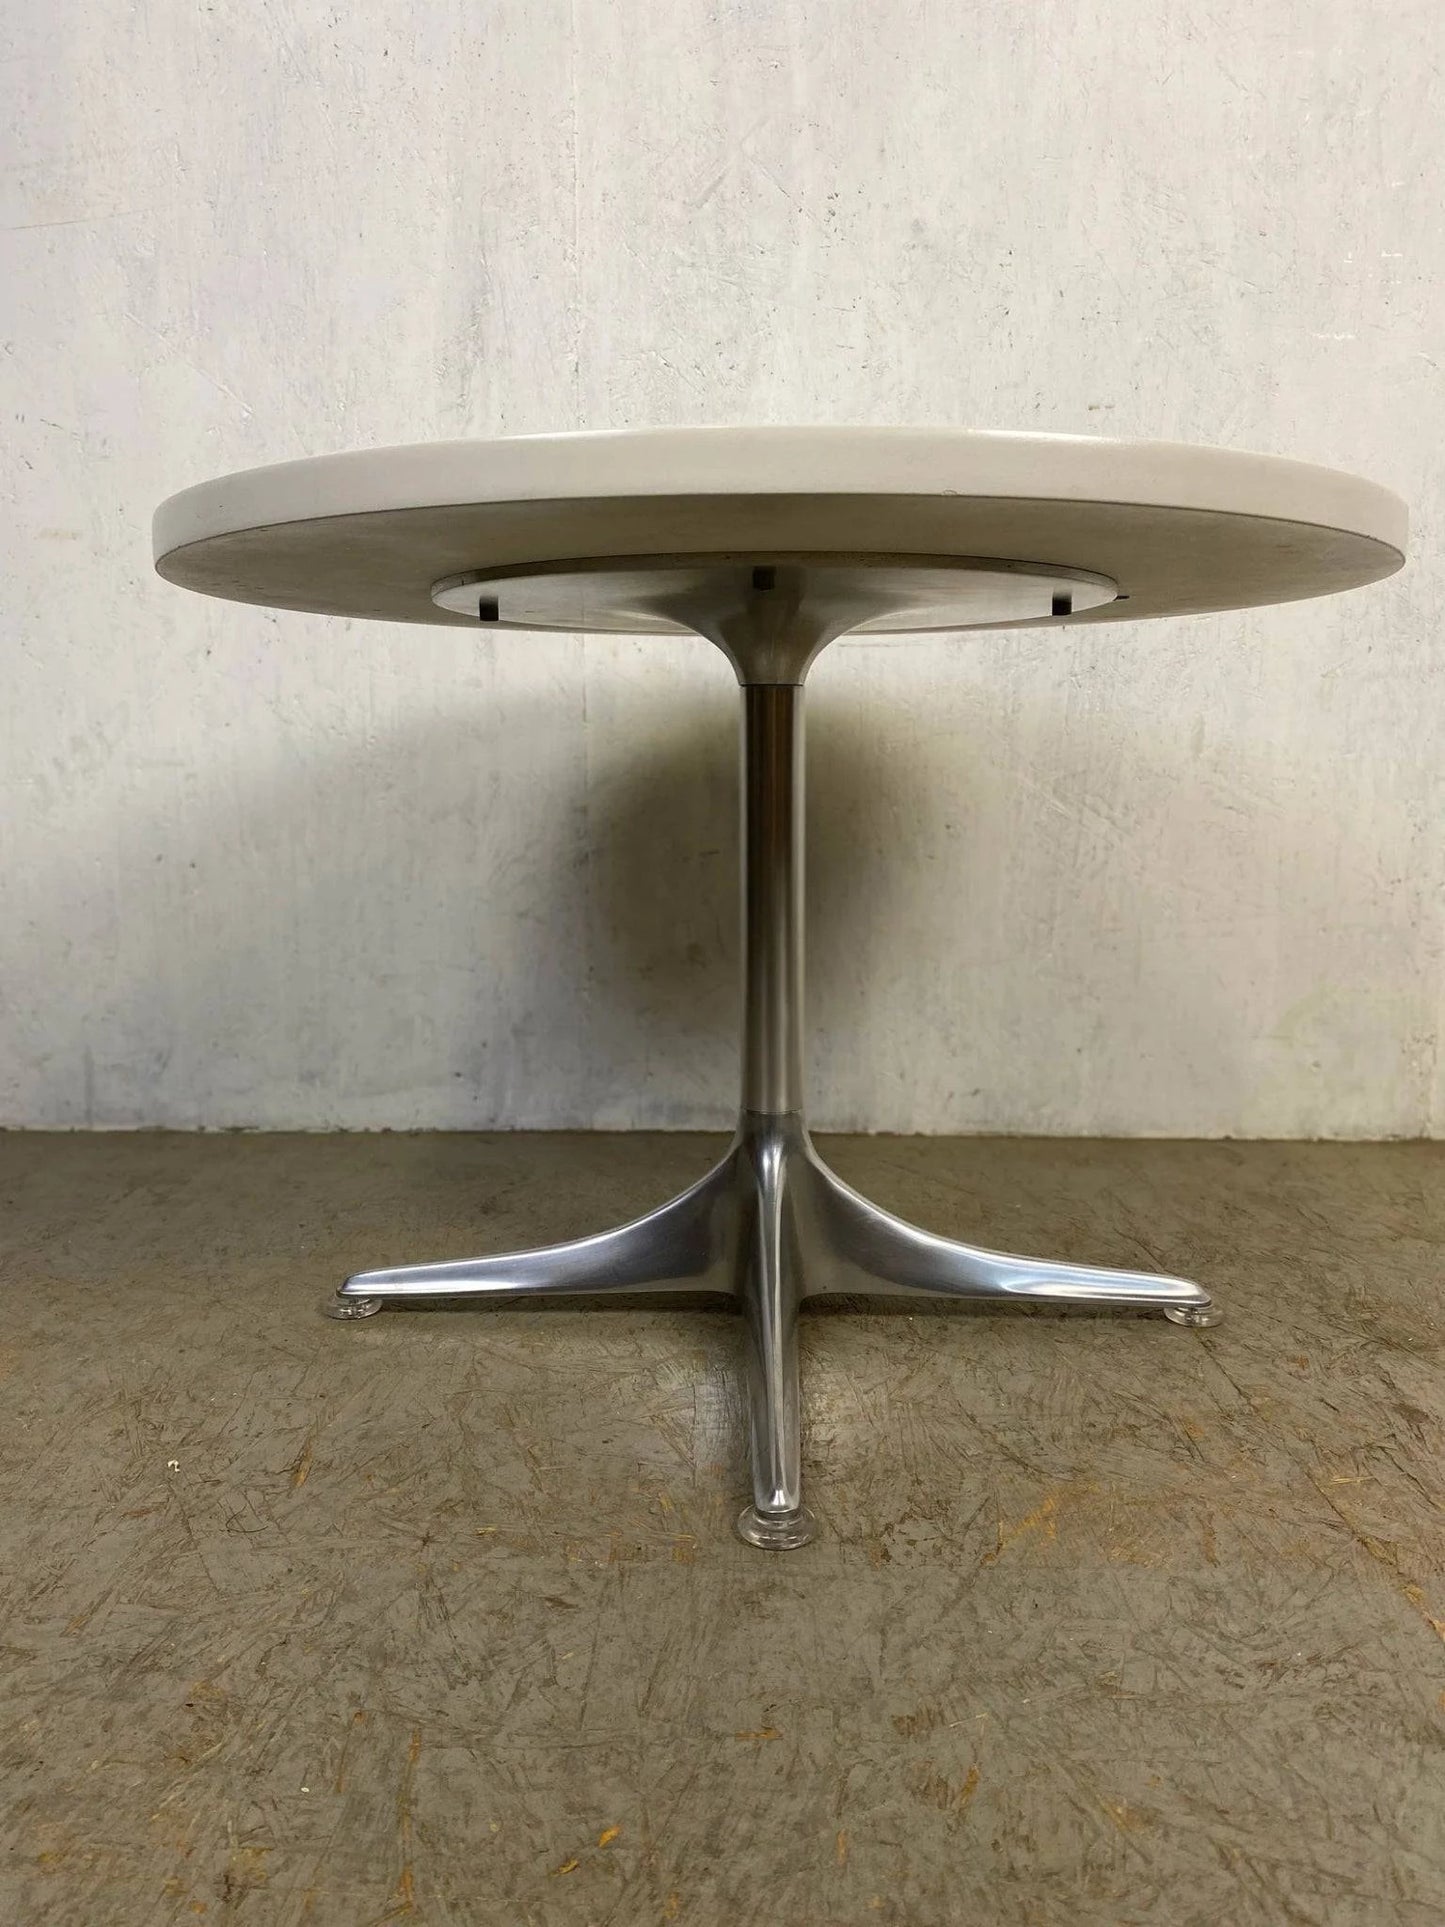 Designer Tisch aus den 60er Jahren von Cor - 2nd home